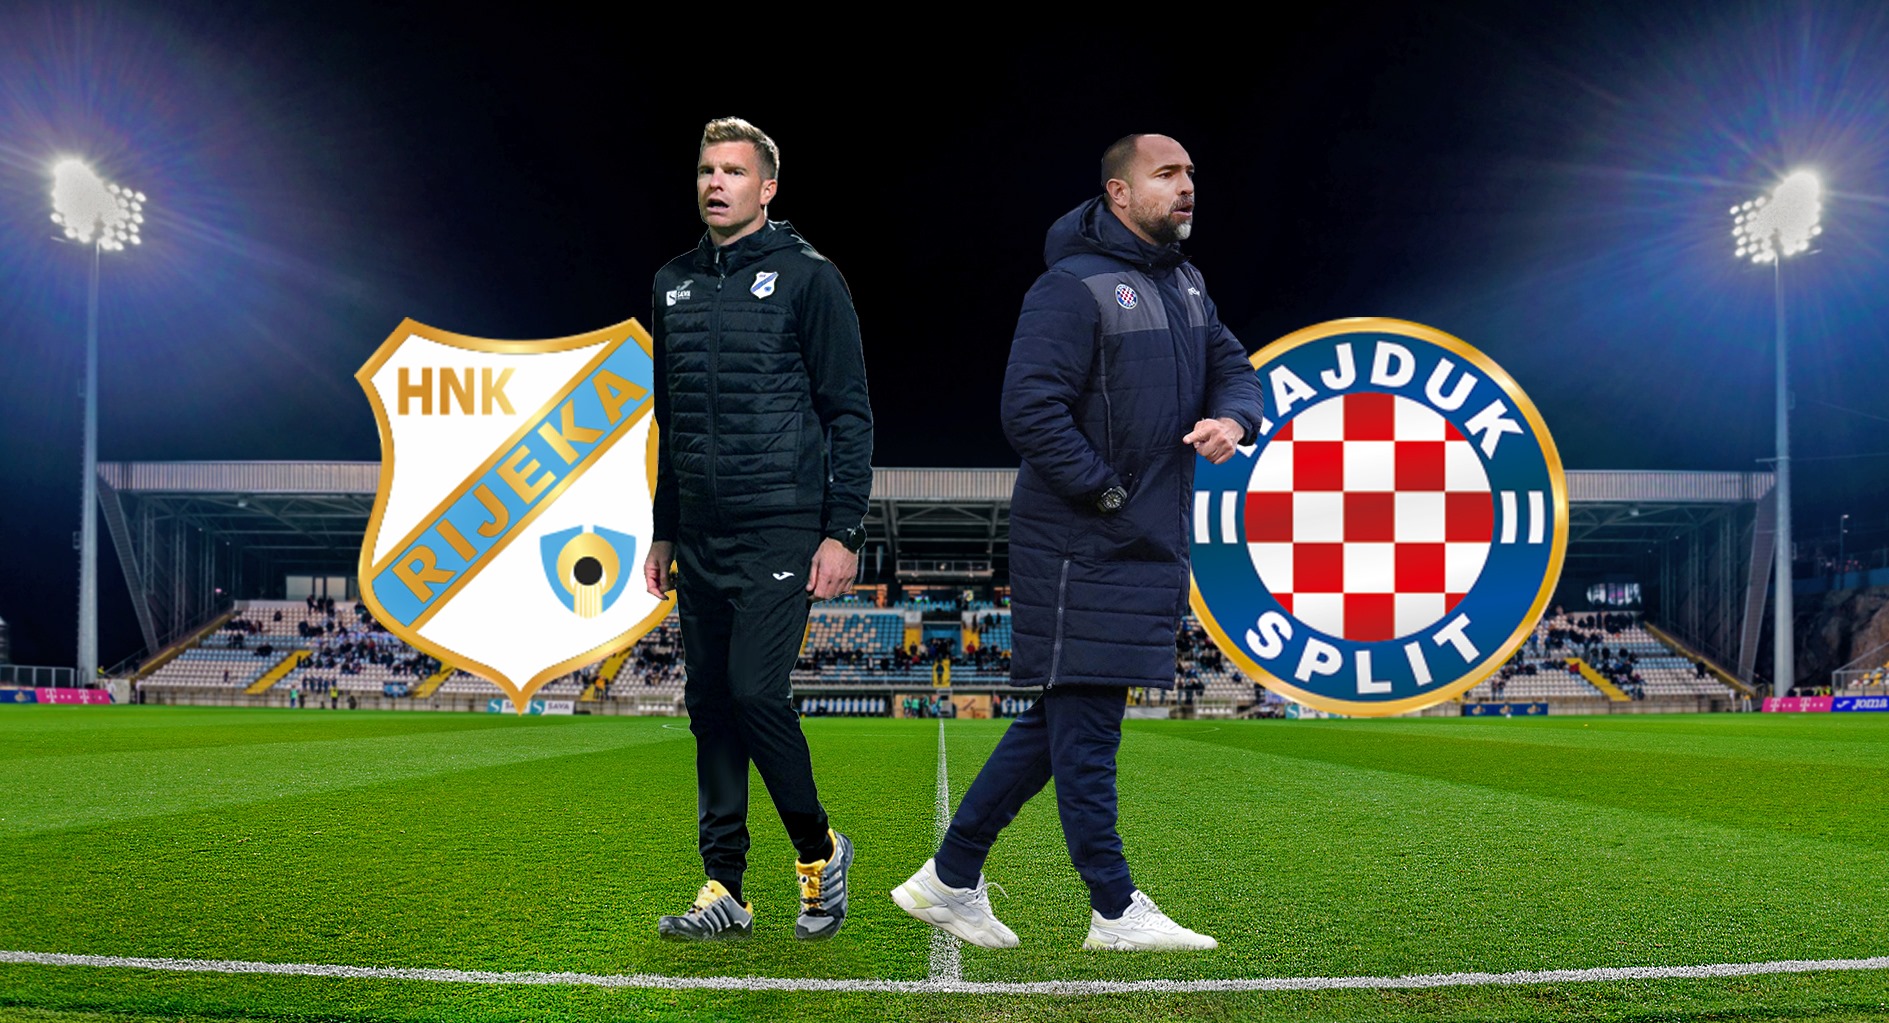 Nogometni susret visokog rizika između HNK Rijeka i HNK Hajduk Split